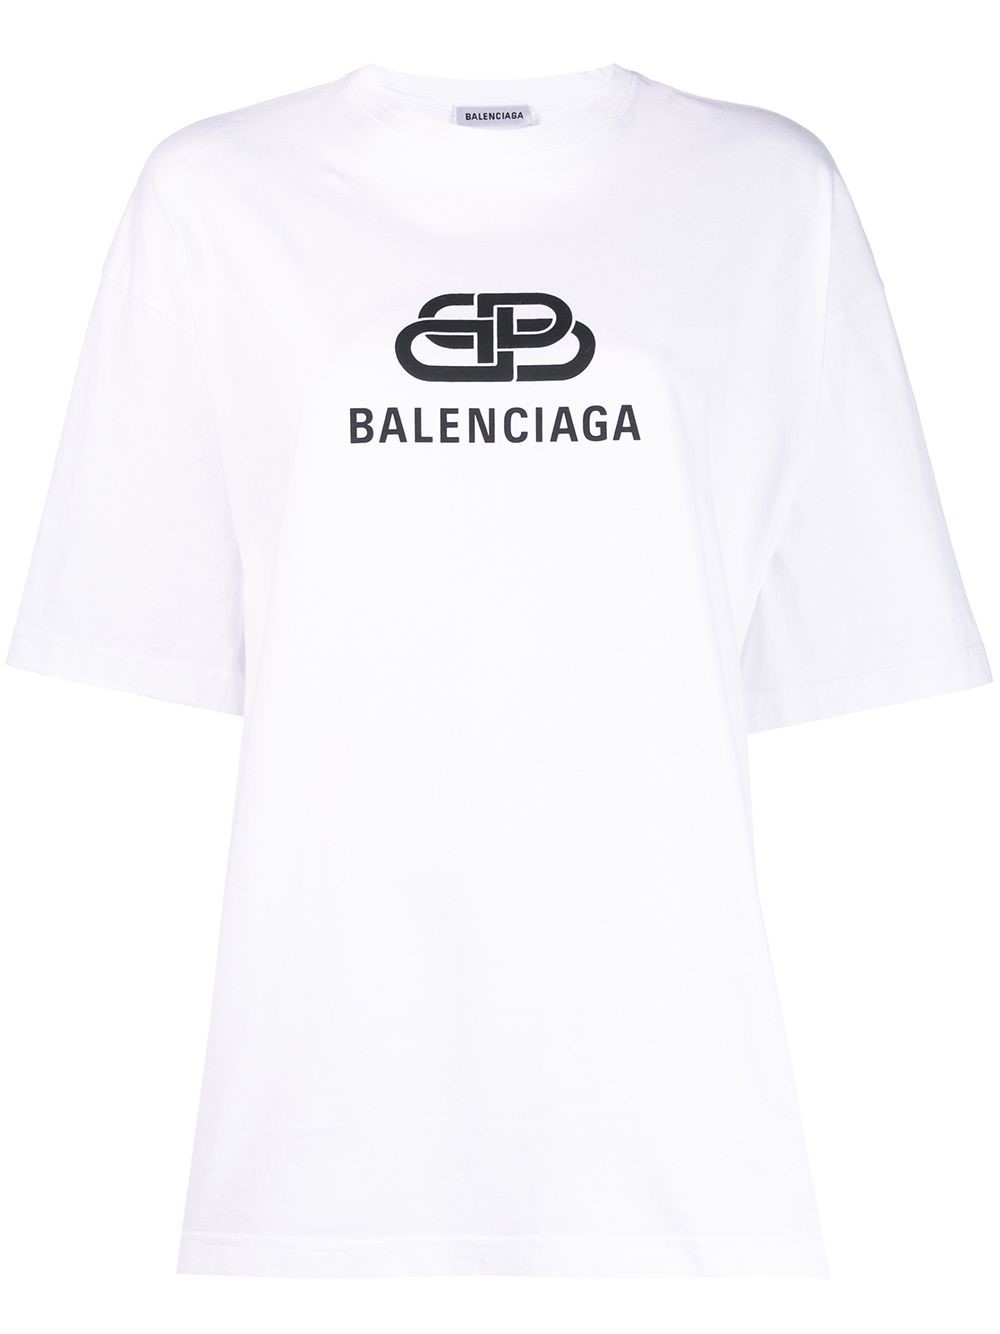 Balenciaga Logo Shirt - Black Balenciaga Paris logo cotton T-shirt ...